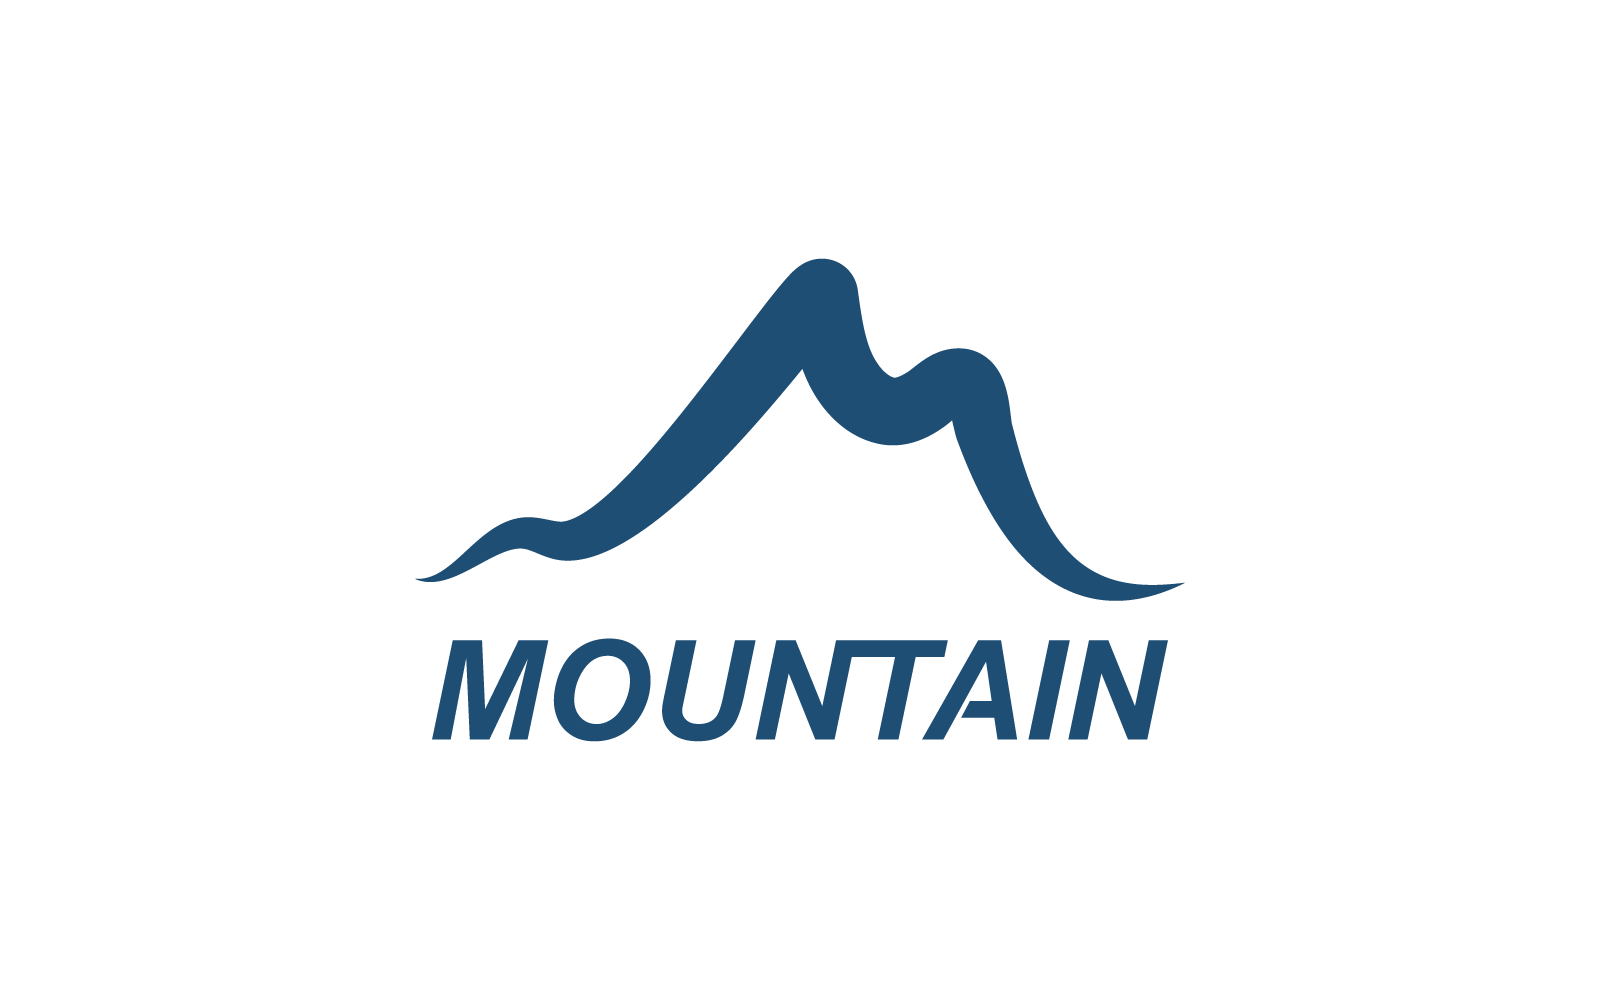 Mountain illustration template logo vector design Logo Template